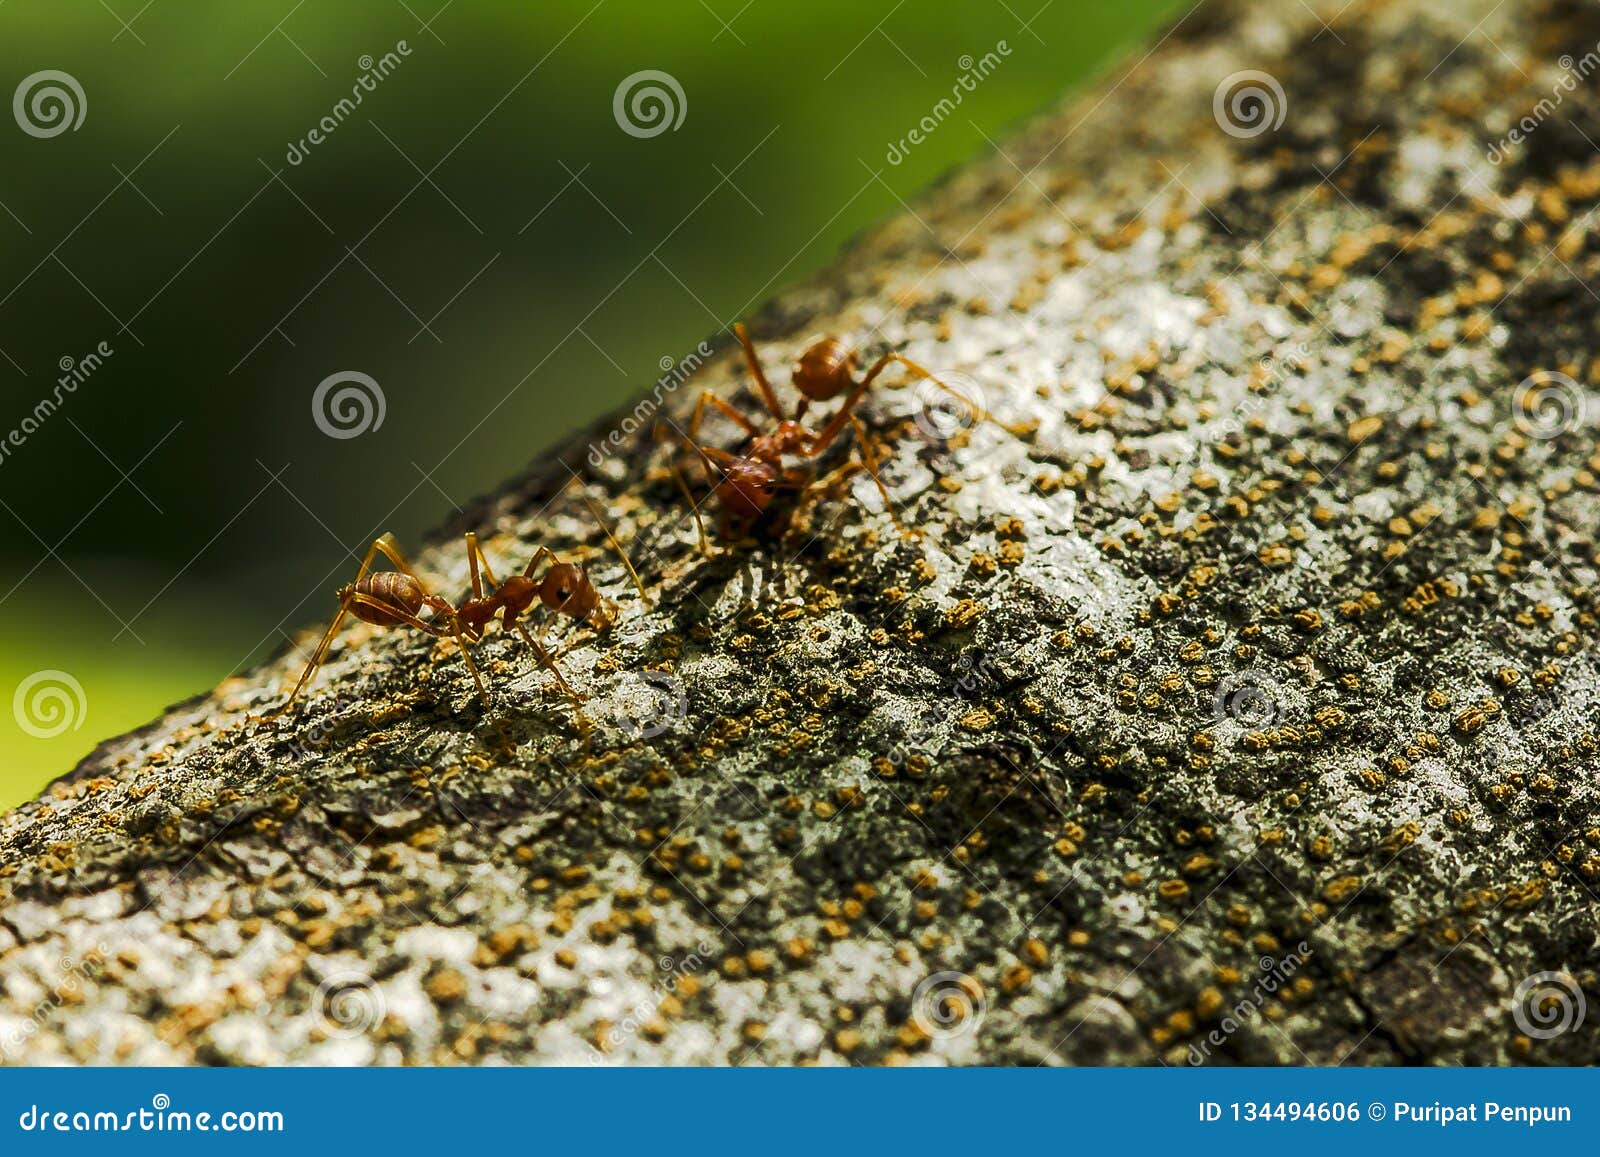 Ameisen Auf Einem Baum in Der Natur Stockfoto - Bild von ameisen ...